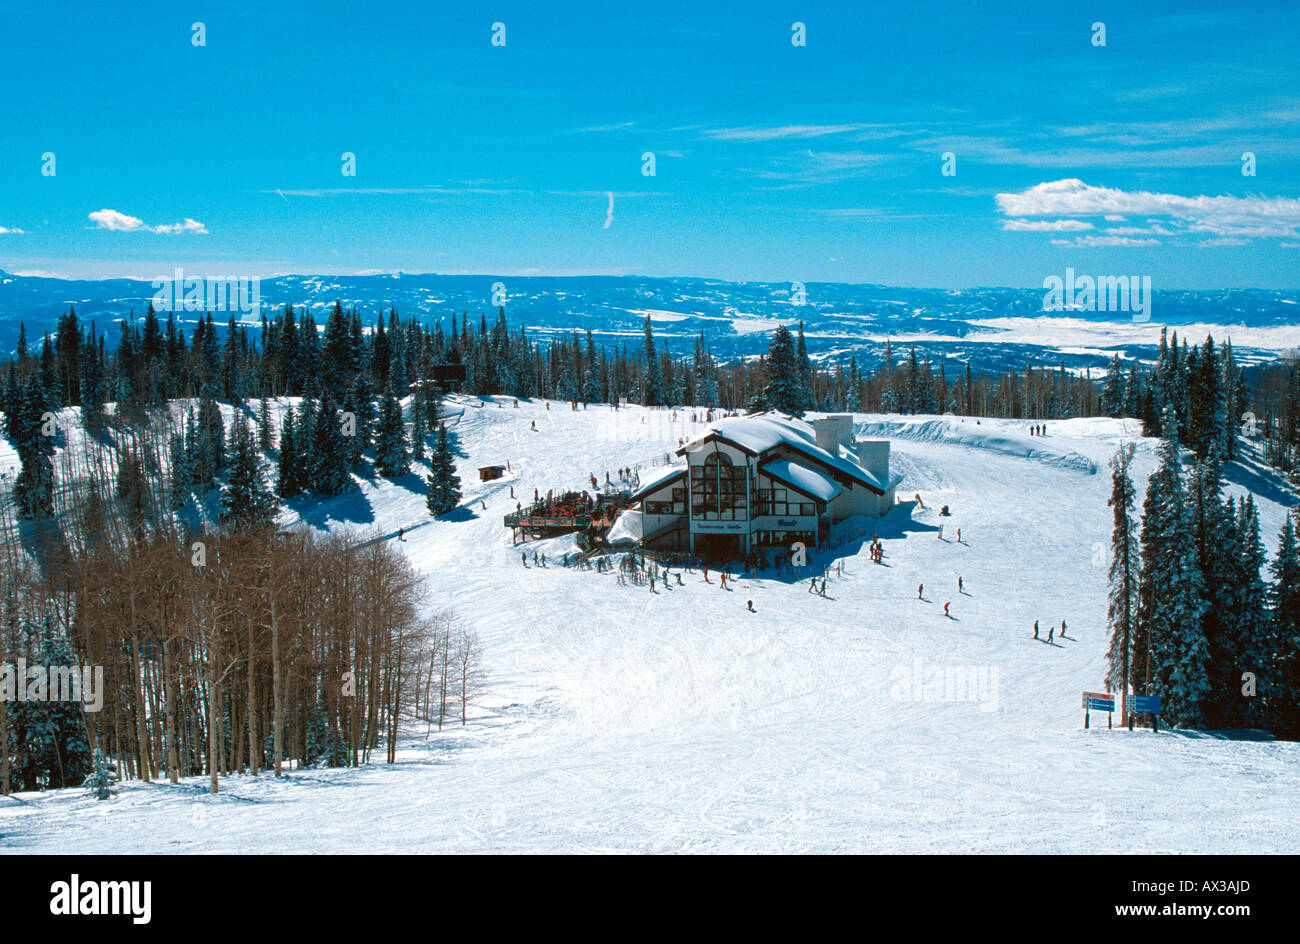 Los esquiadores que rodean sillín Rendezvous hotel de esquí Steamboat Springs CO EE.UU. Foto de stock